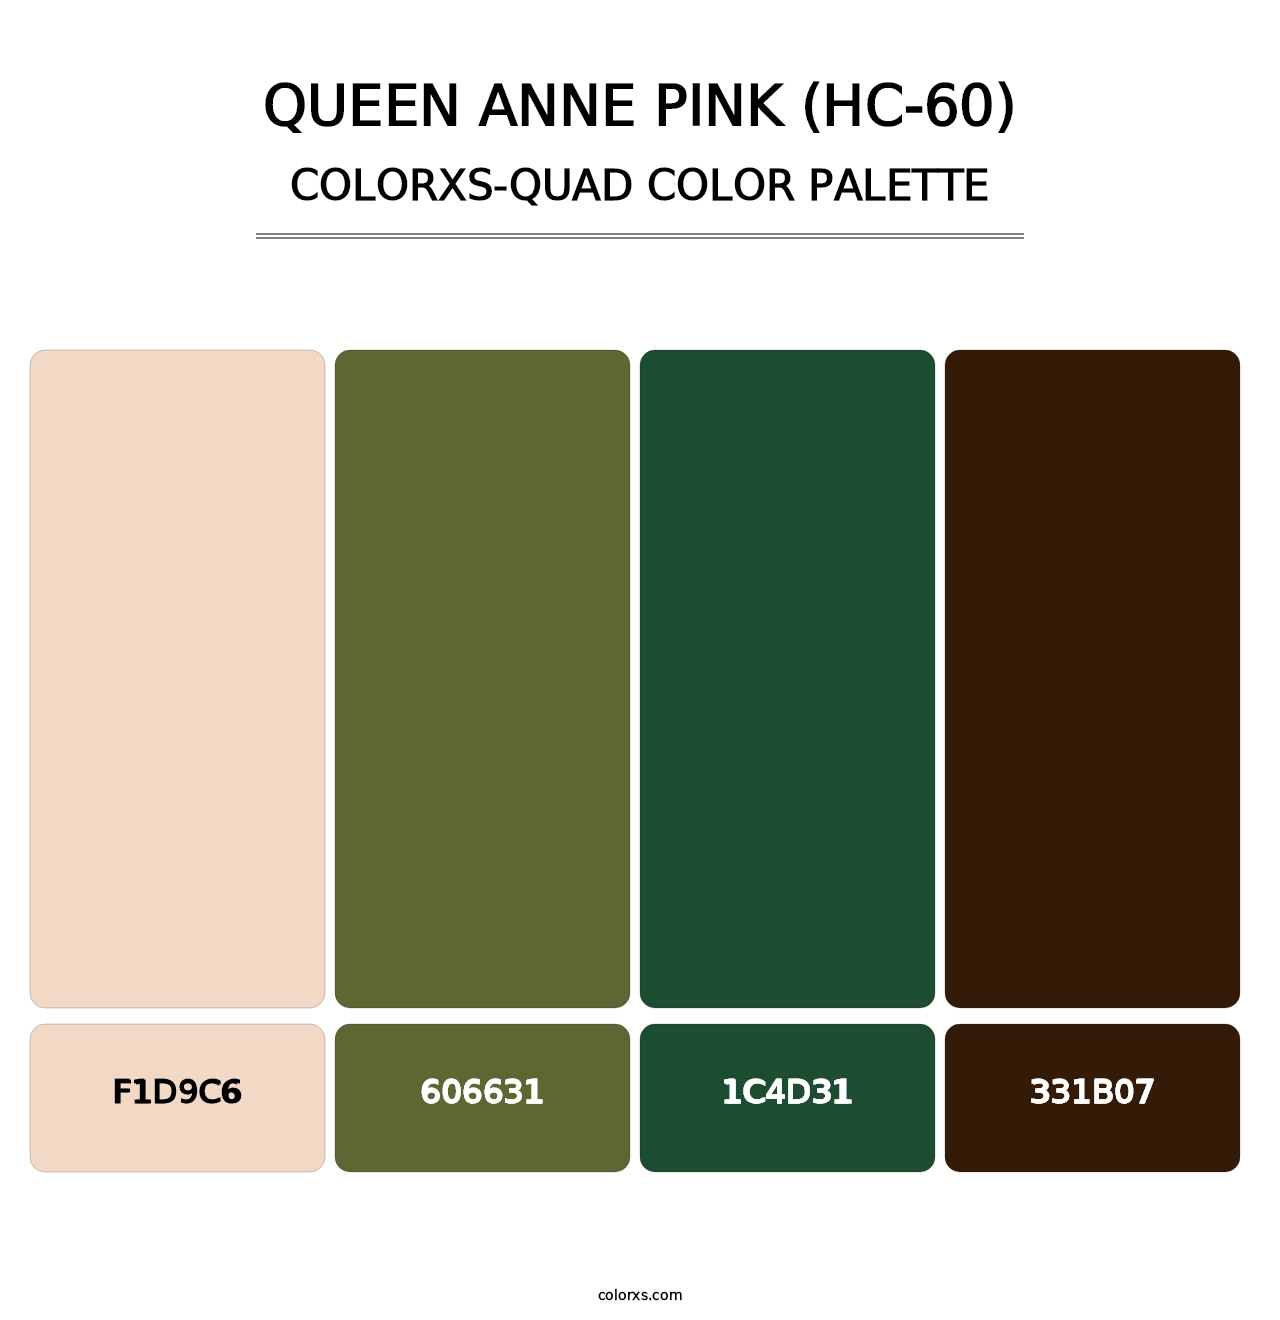 Queen Anne Pink (HC-60) - Colorxs Quad Palette